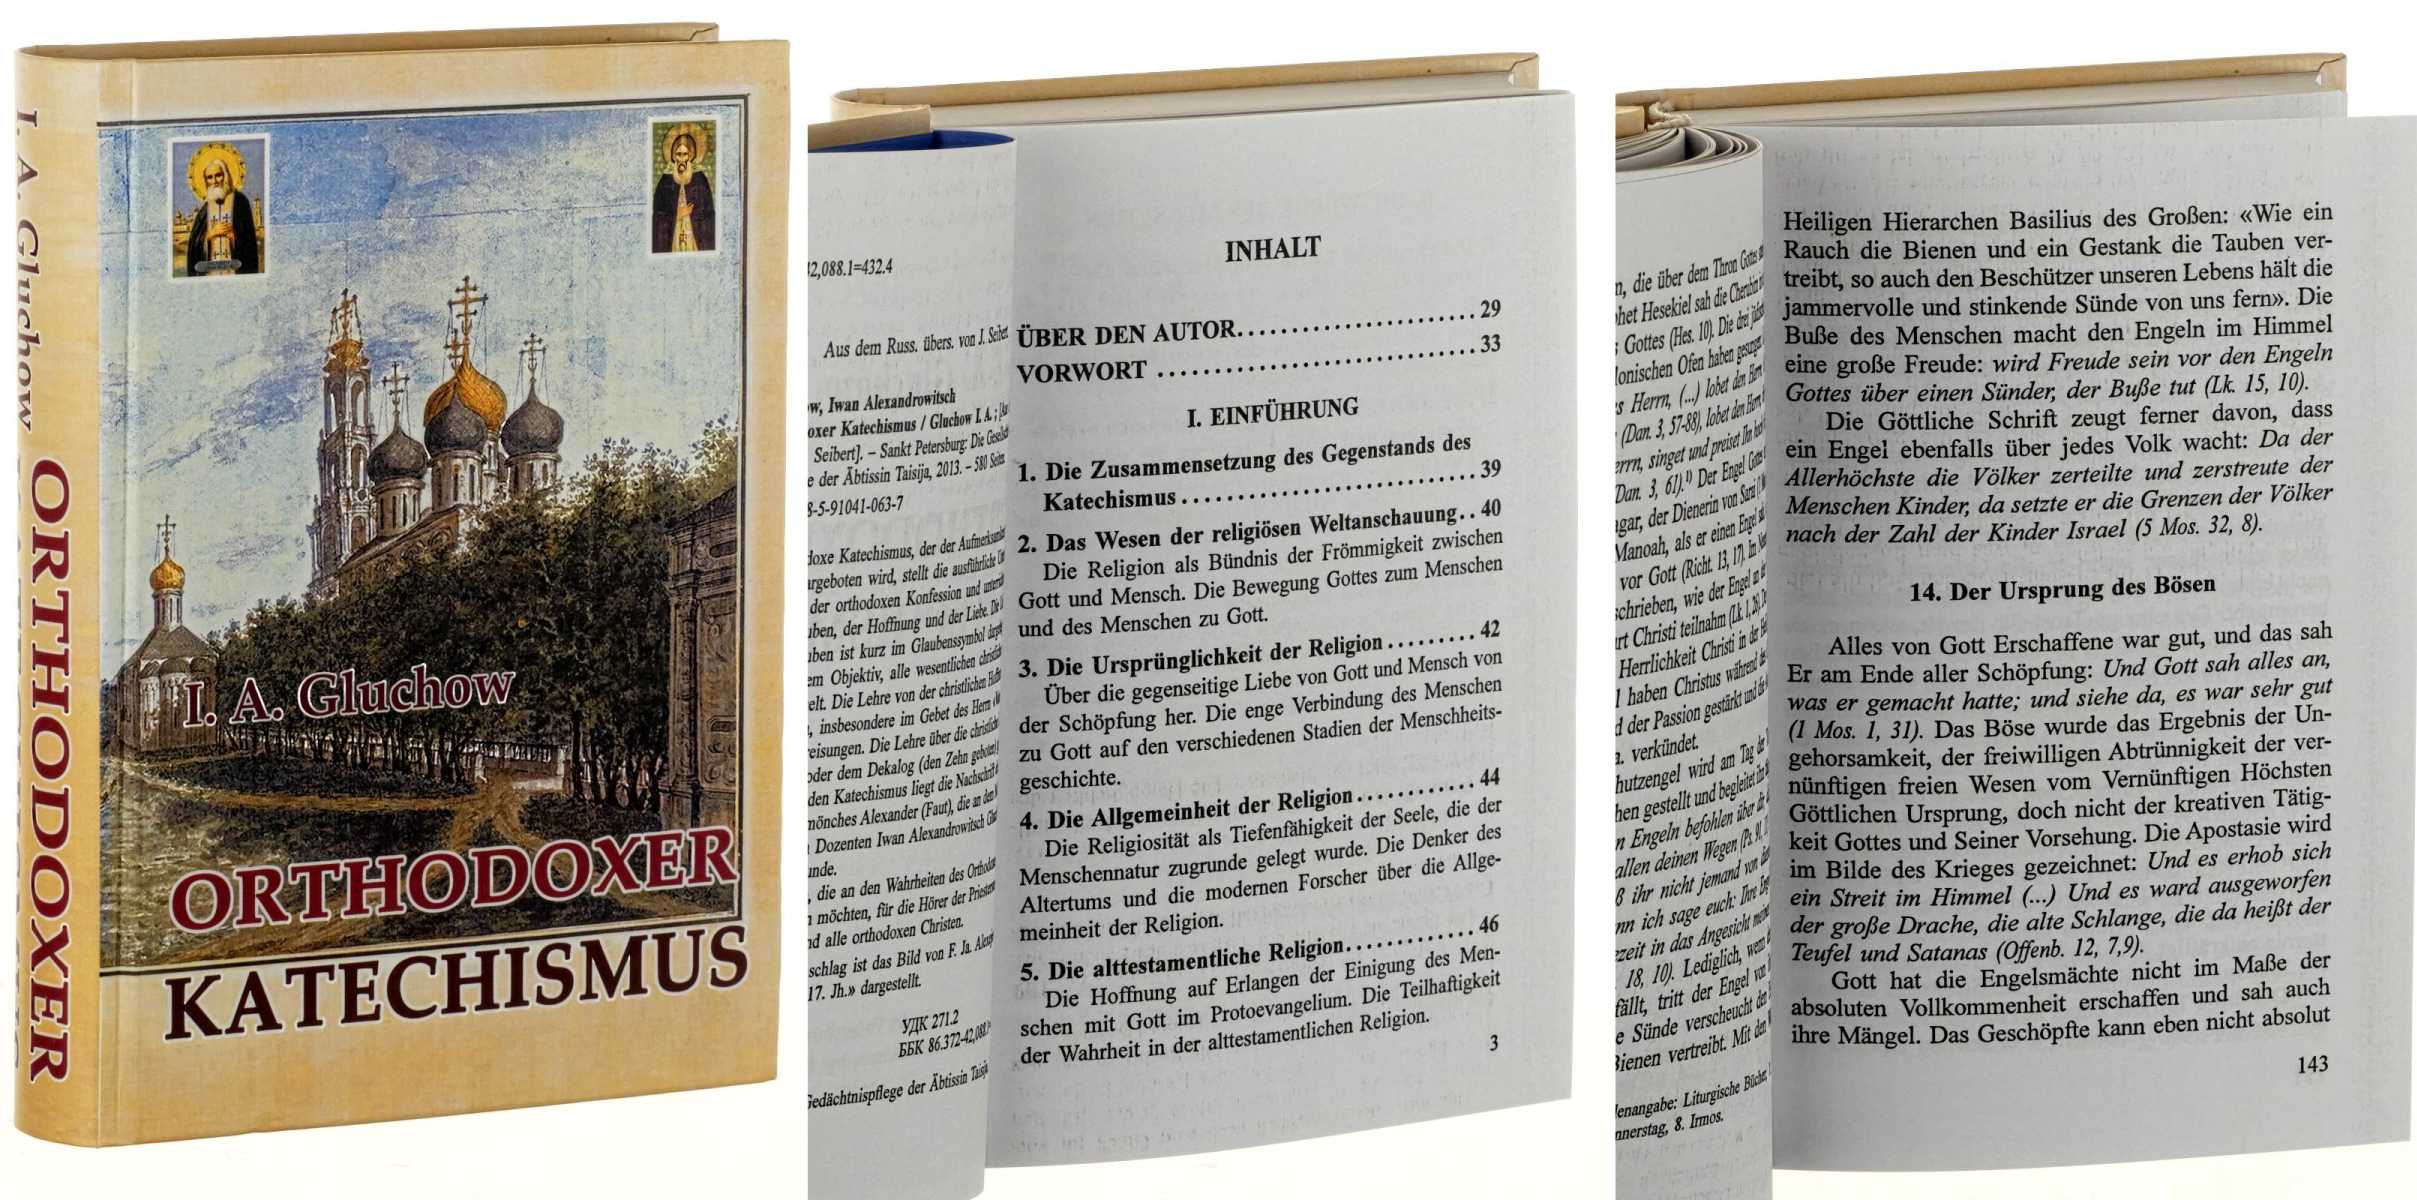 Gluchow, I.A.:  Orthodoxer Katechismus. Aus dem Russ. übers. von J. Seibert. 